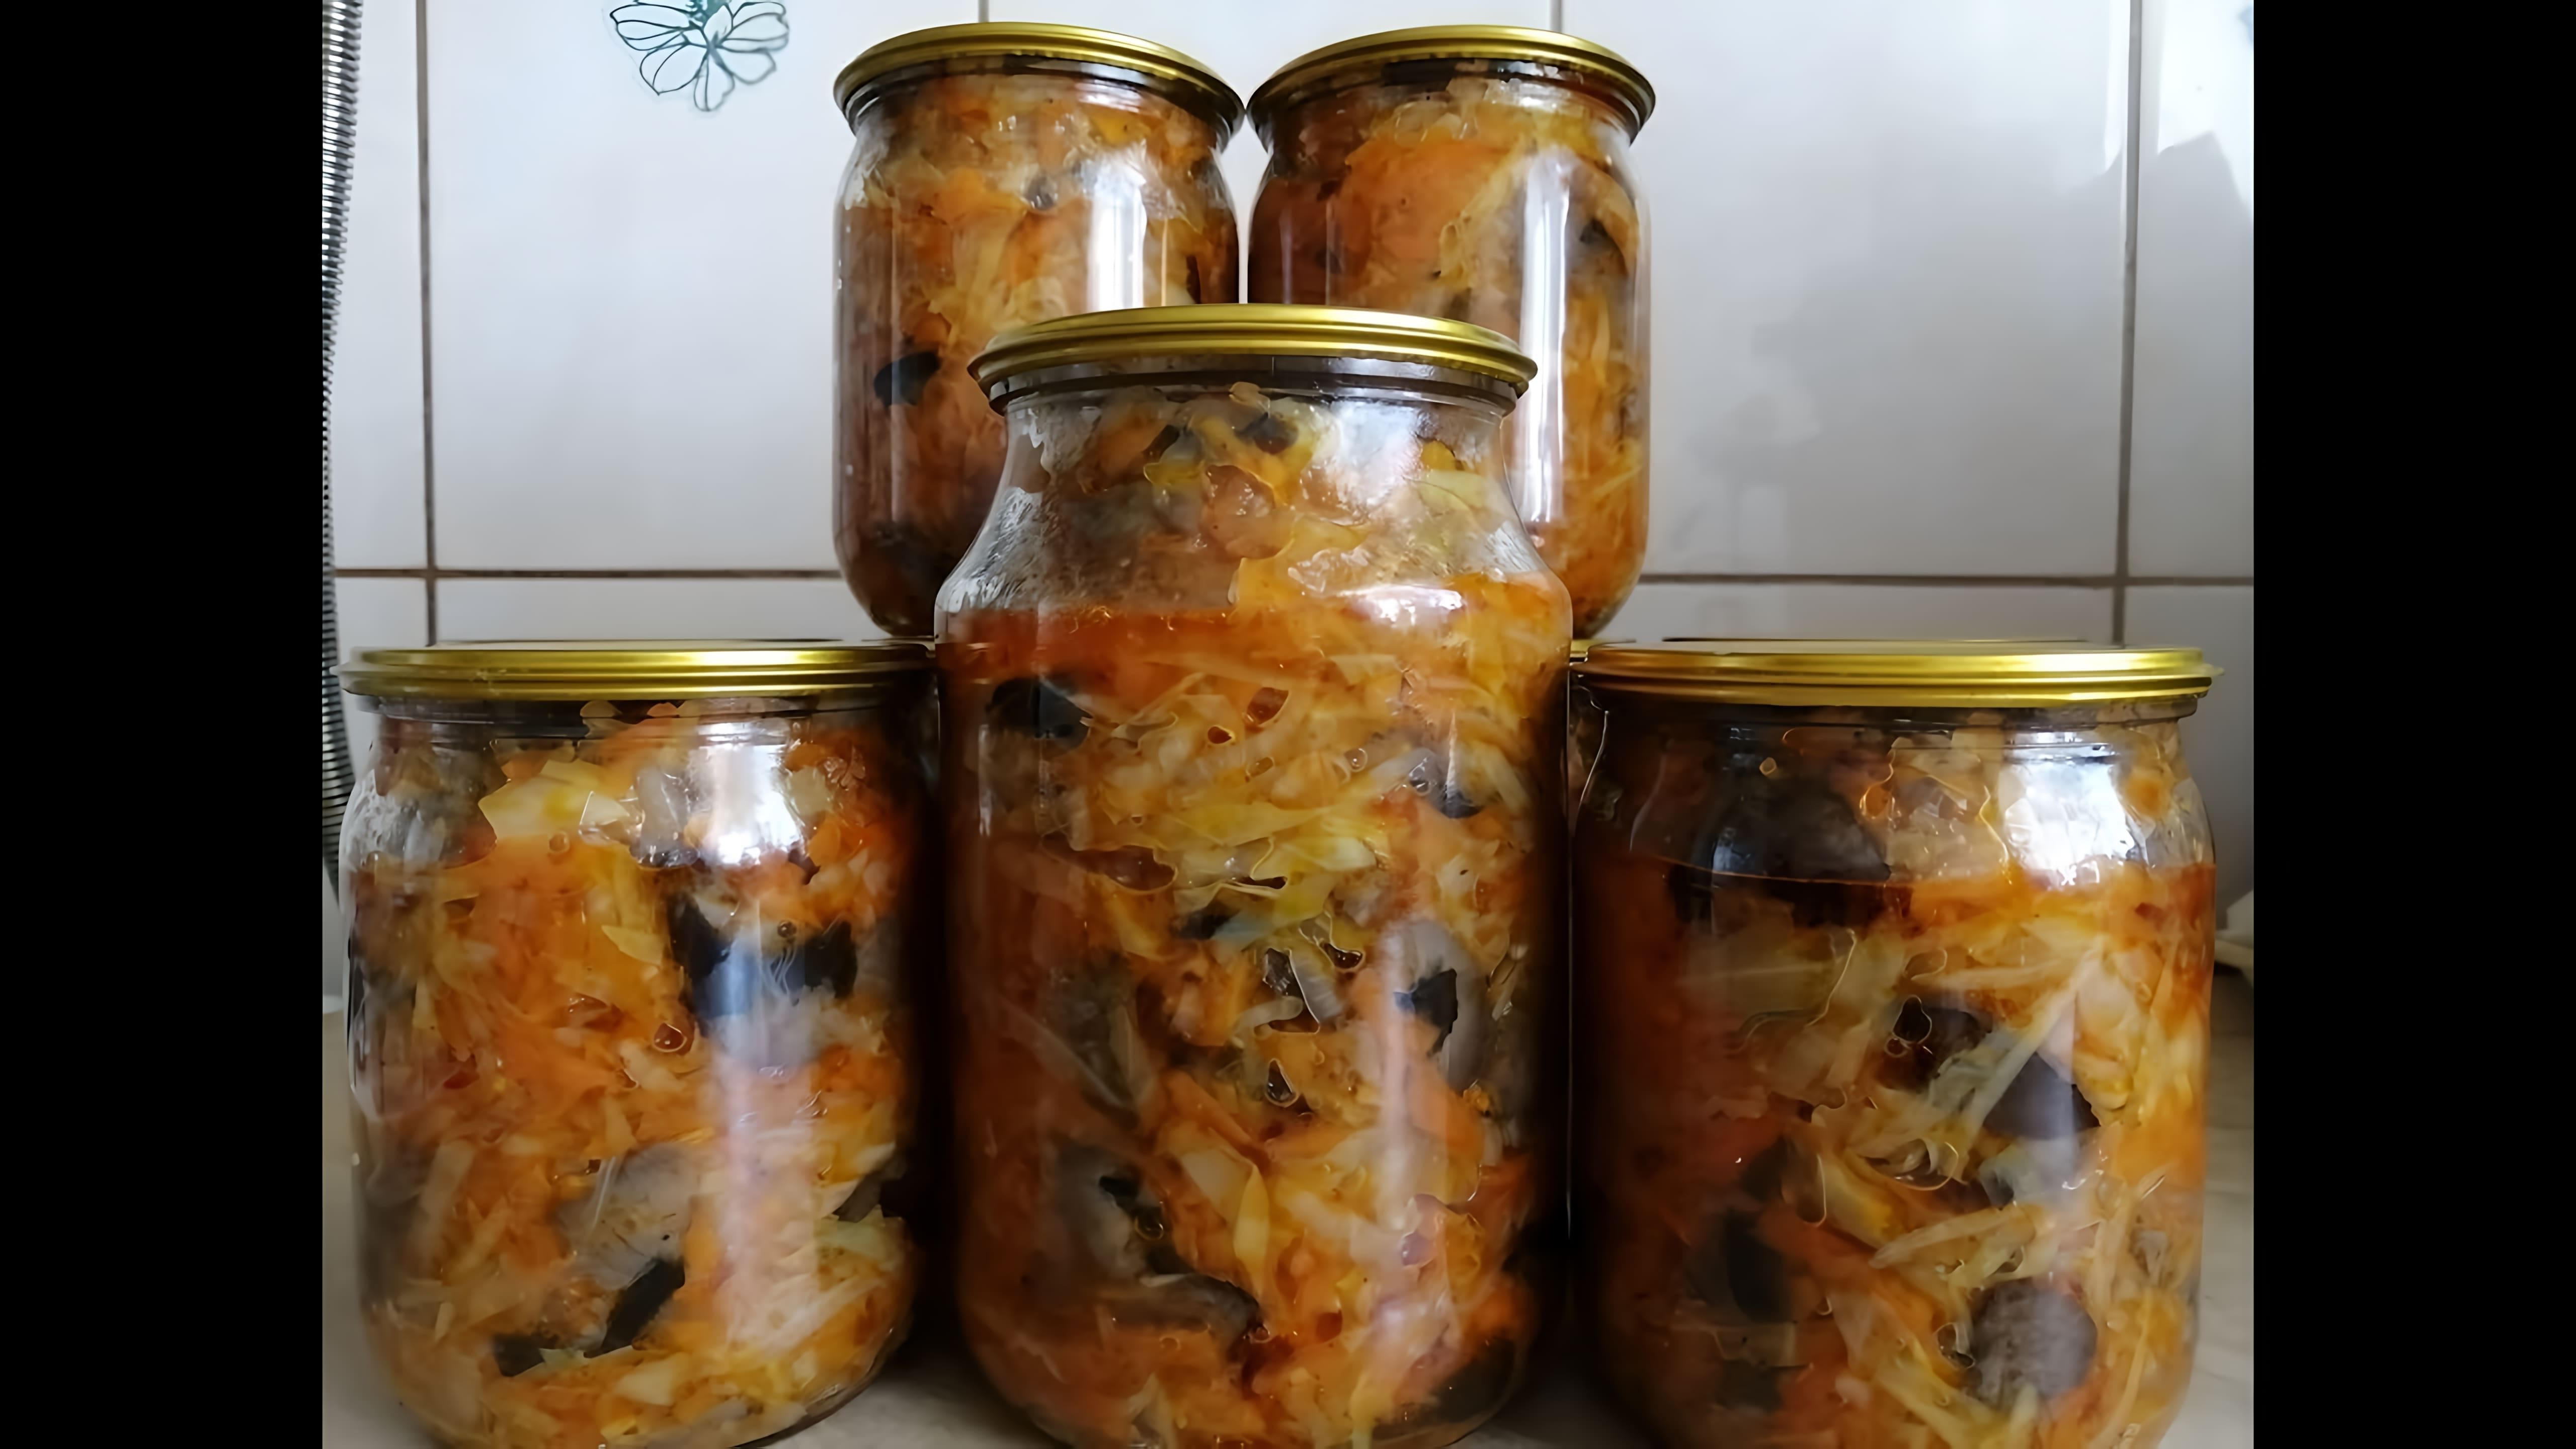 Видео рецепт грибной солянки, русского рагу, которое описывается как очень вкусное и простое в приготовлении